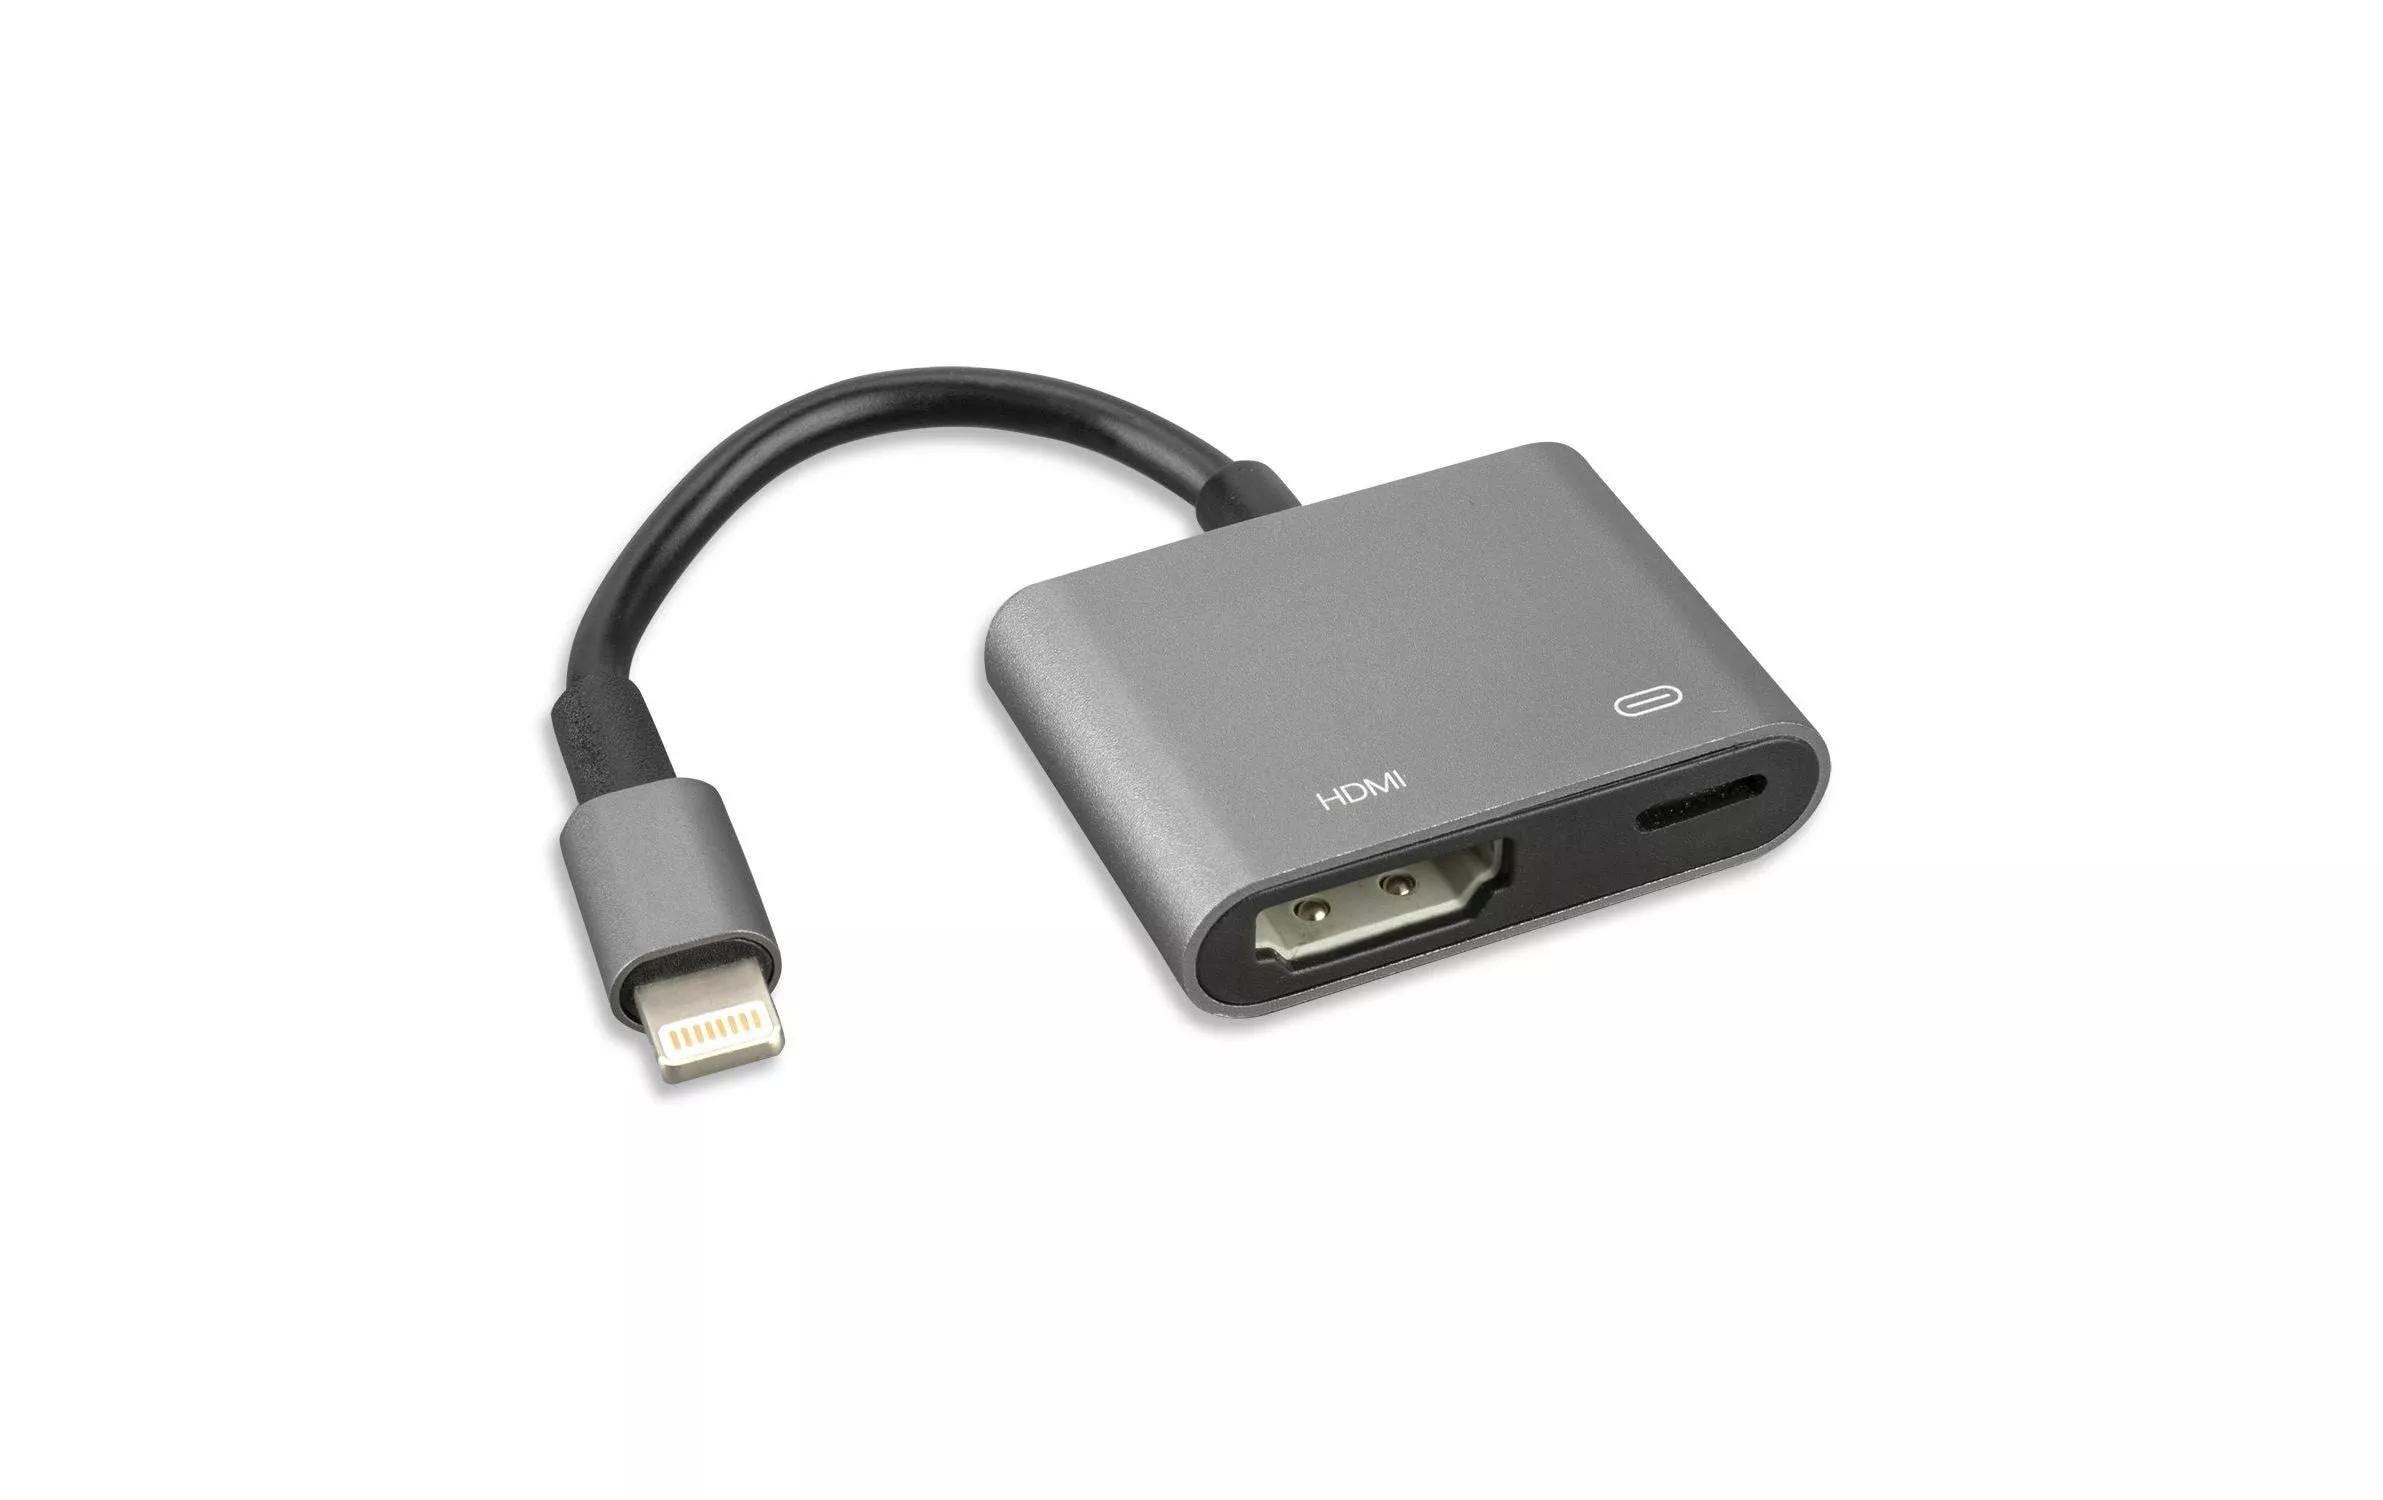 Adaptateur Lightning \u2013 HDMI, 4K support Lightning - HDMI